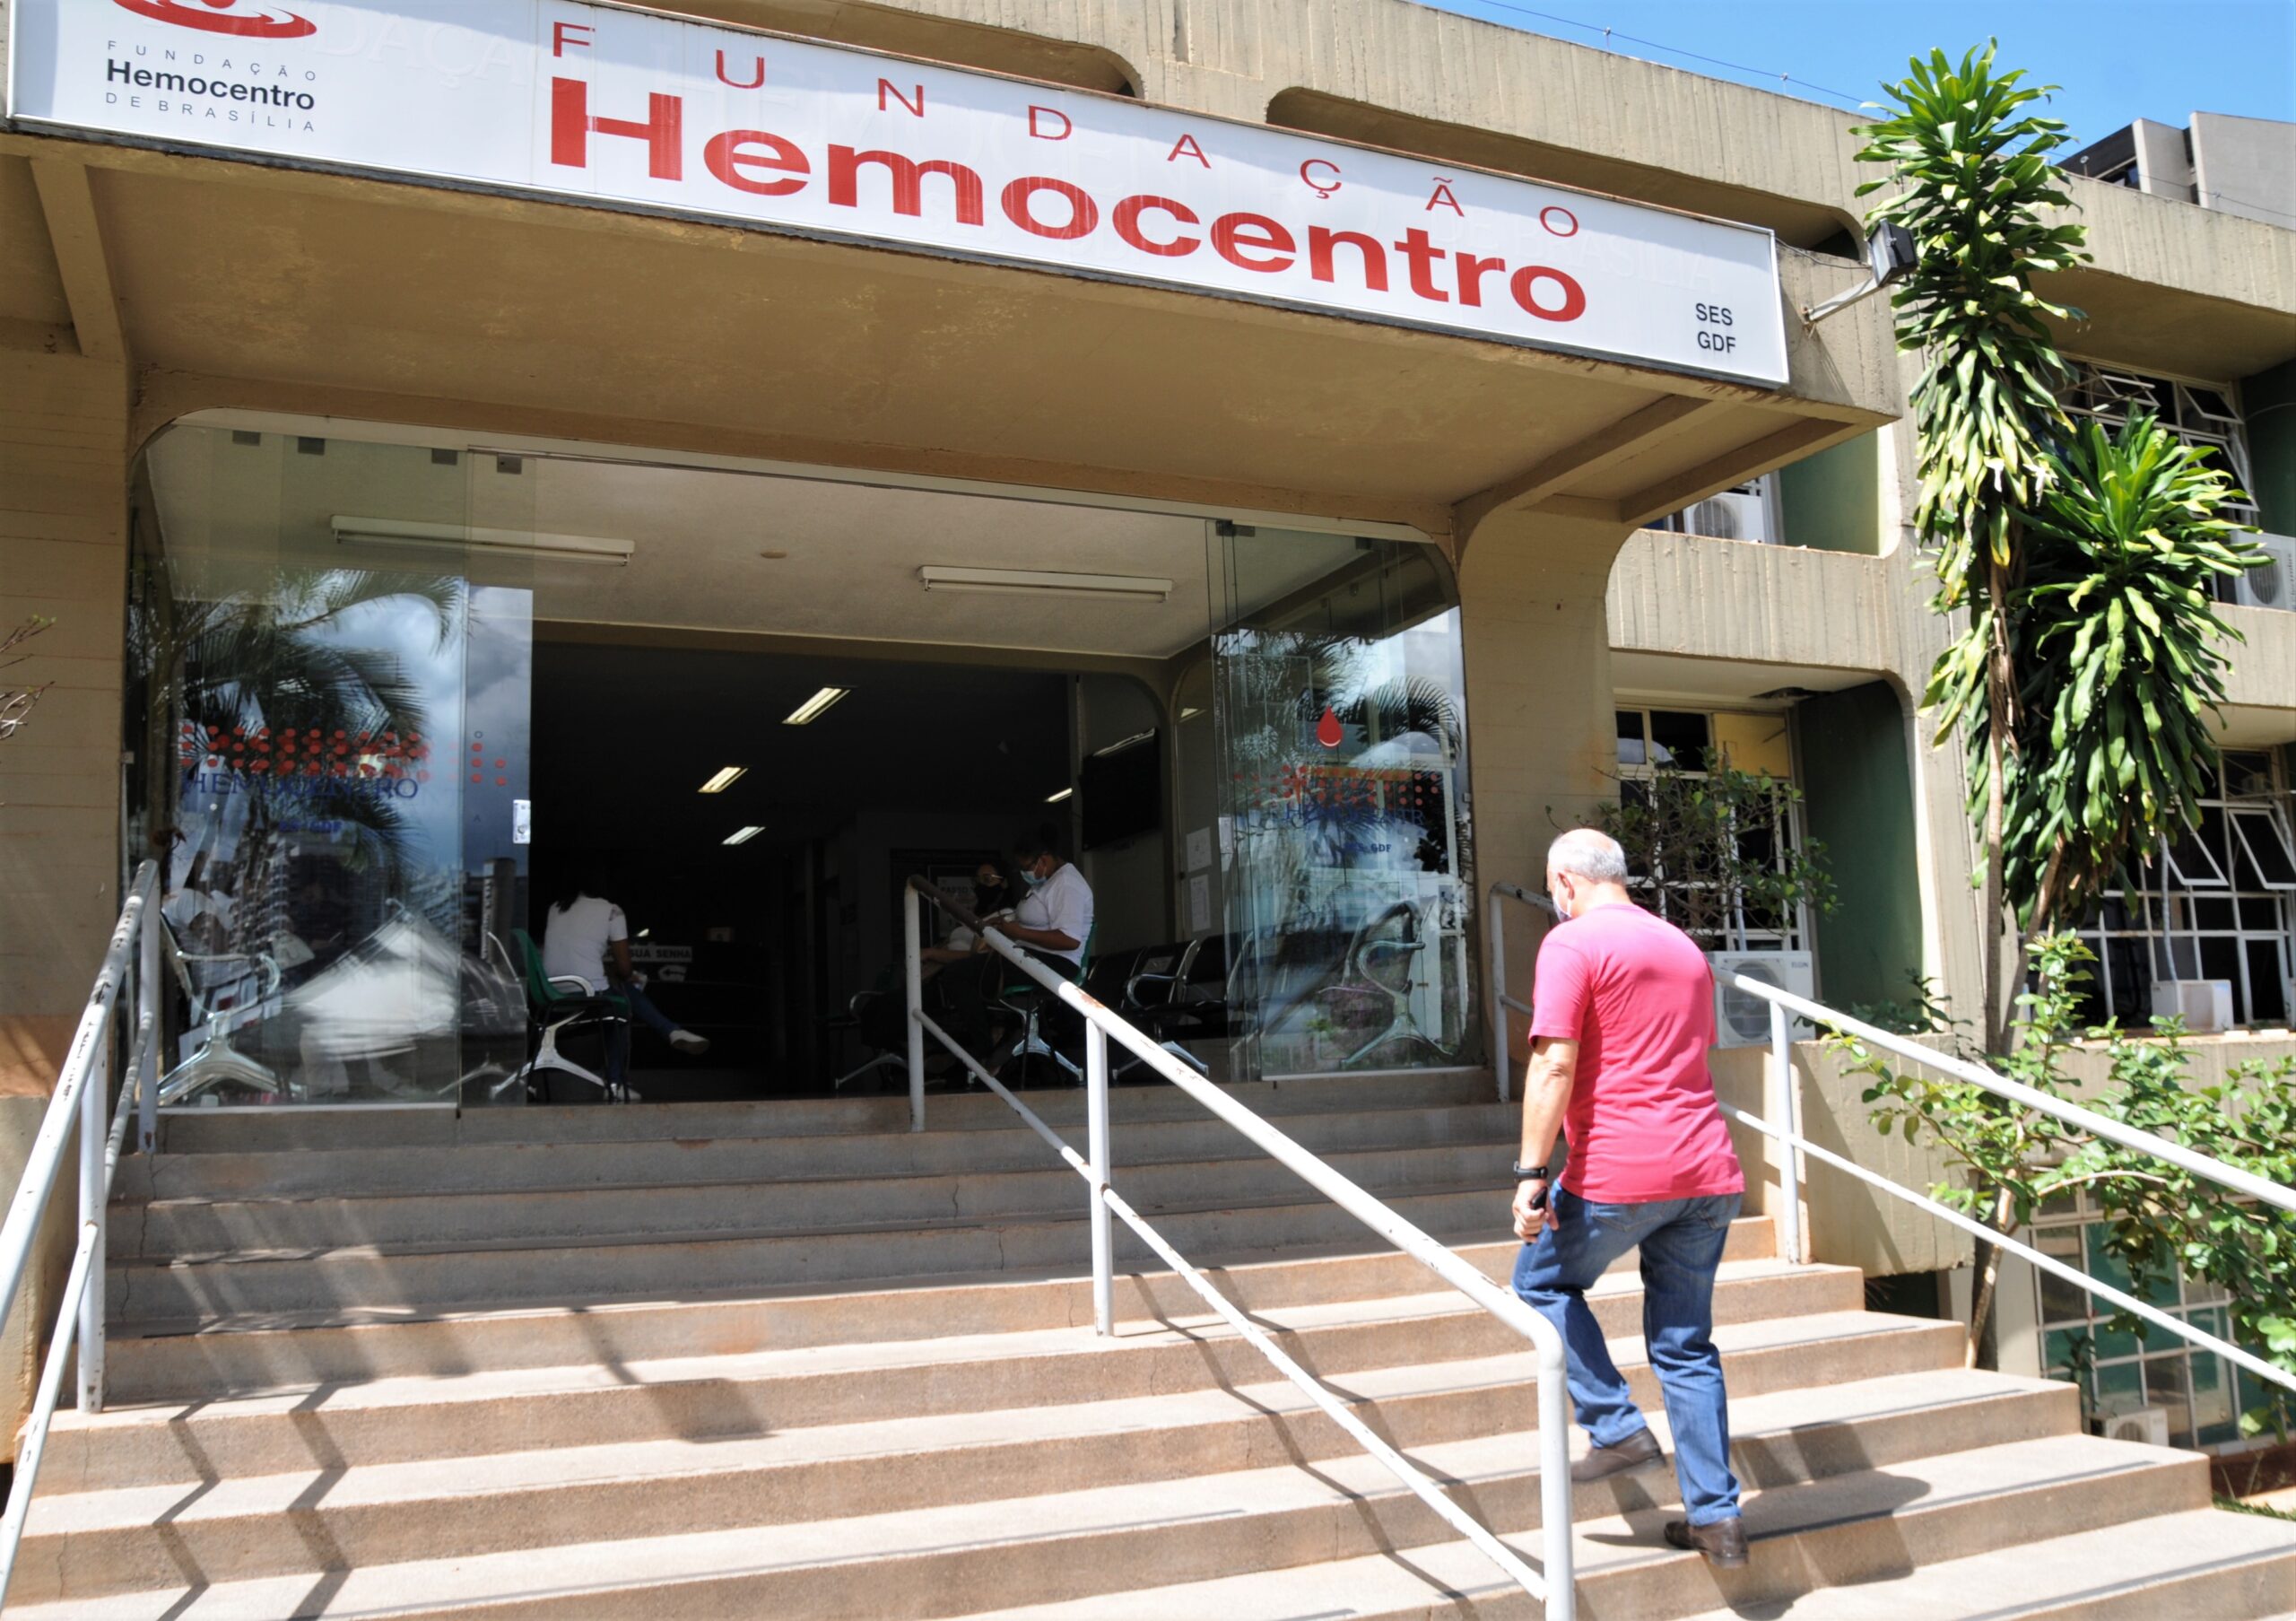 Fornecimento de sangue 24 horas completa um mês nesta sexta (20) | Agência Brasília